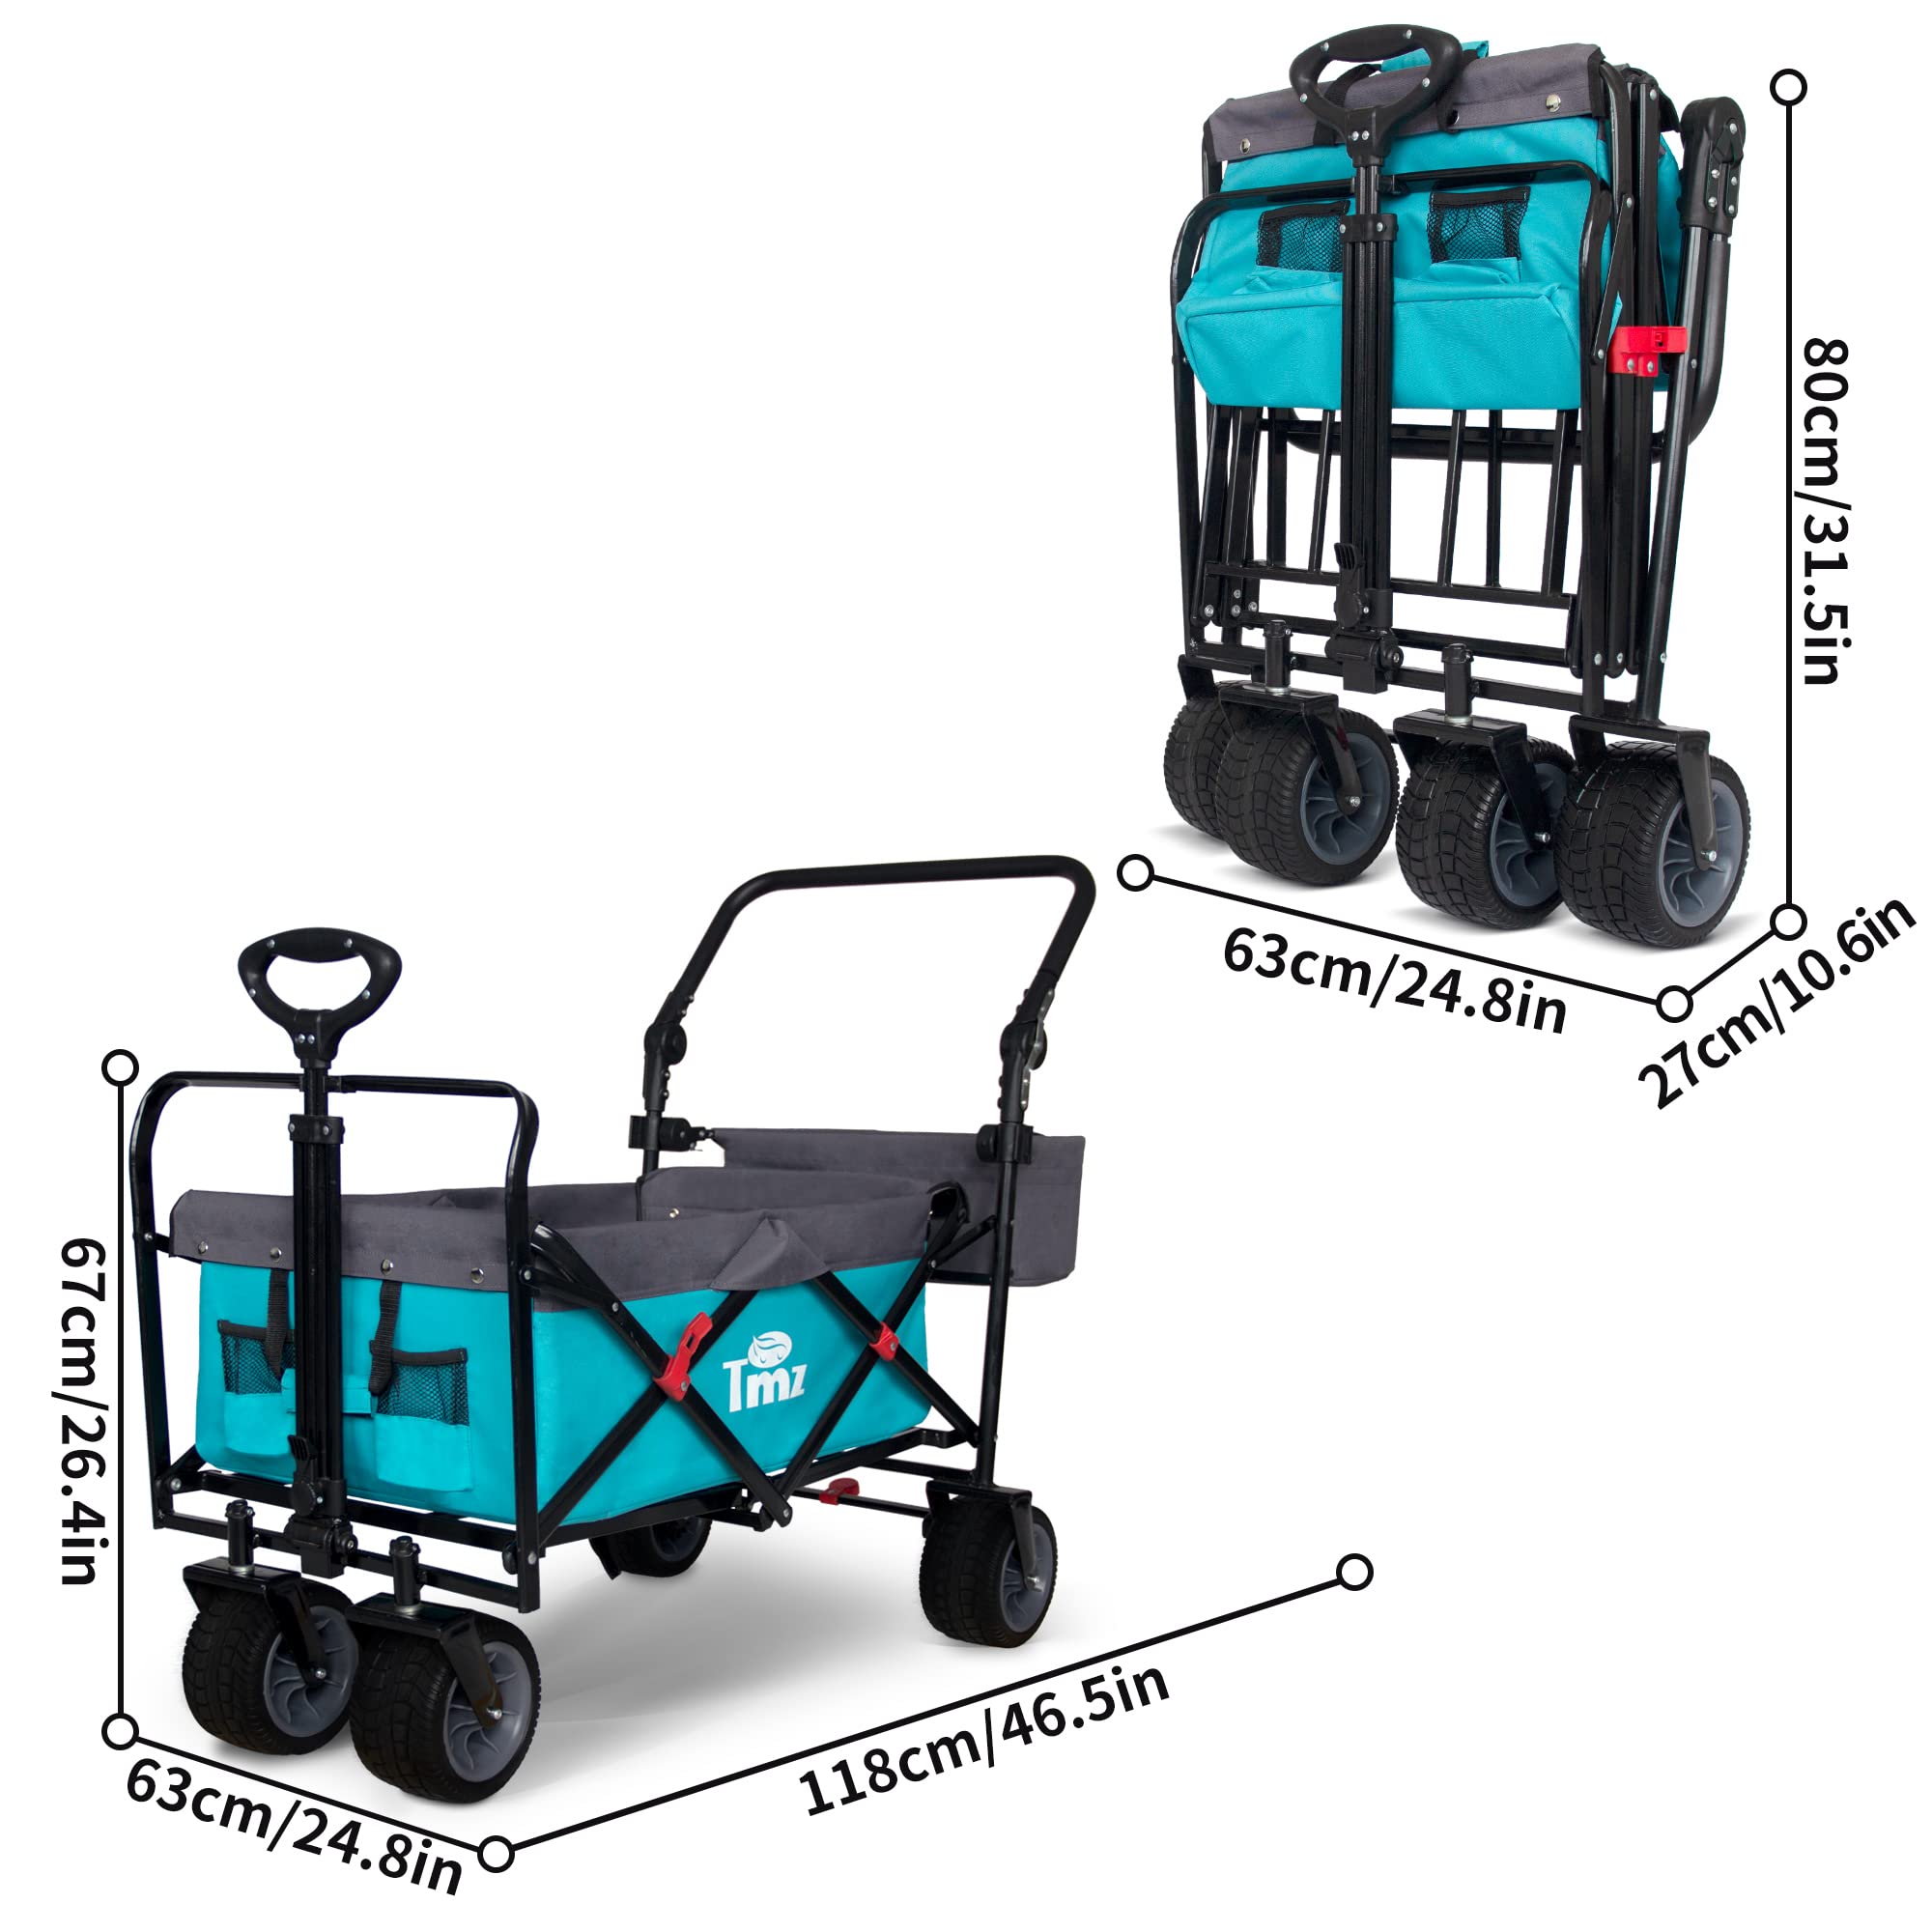 TMZ All Terrain Utility Folding Wagon, Collapsible Garden Cart, Heavy Duty Beach Wagon, for Shopping, Camping, and Outdoor Activ